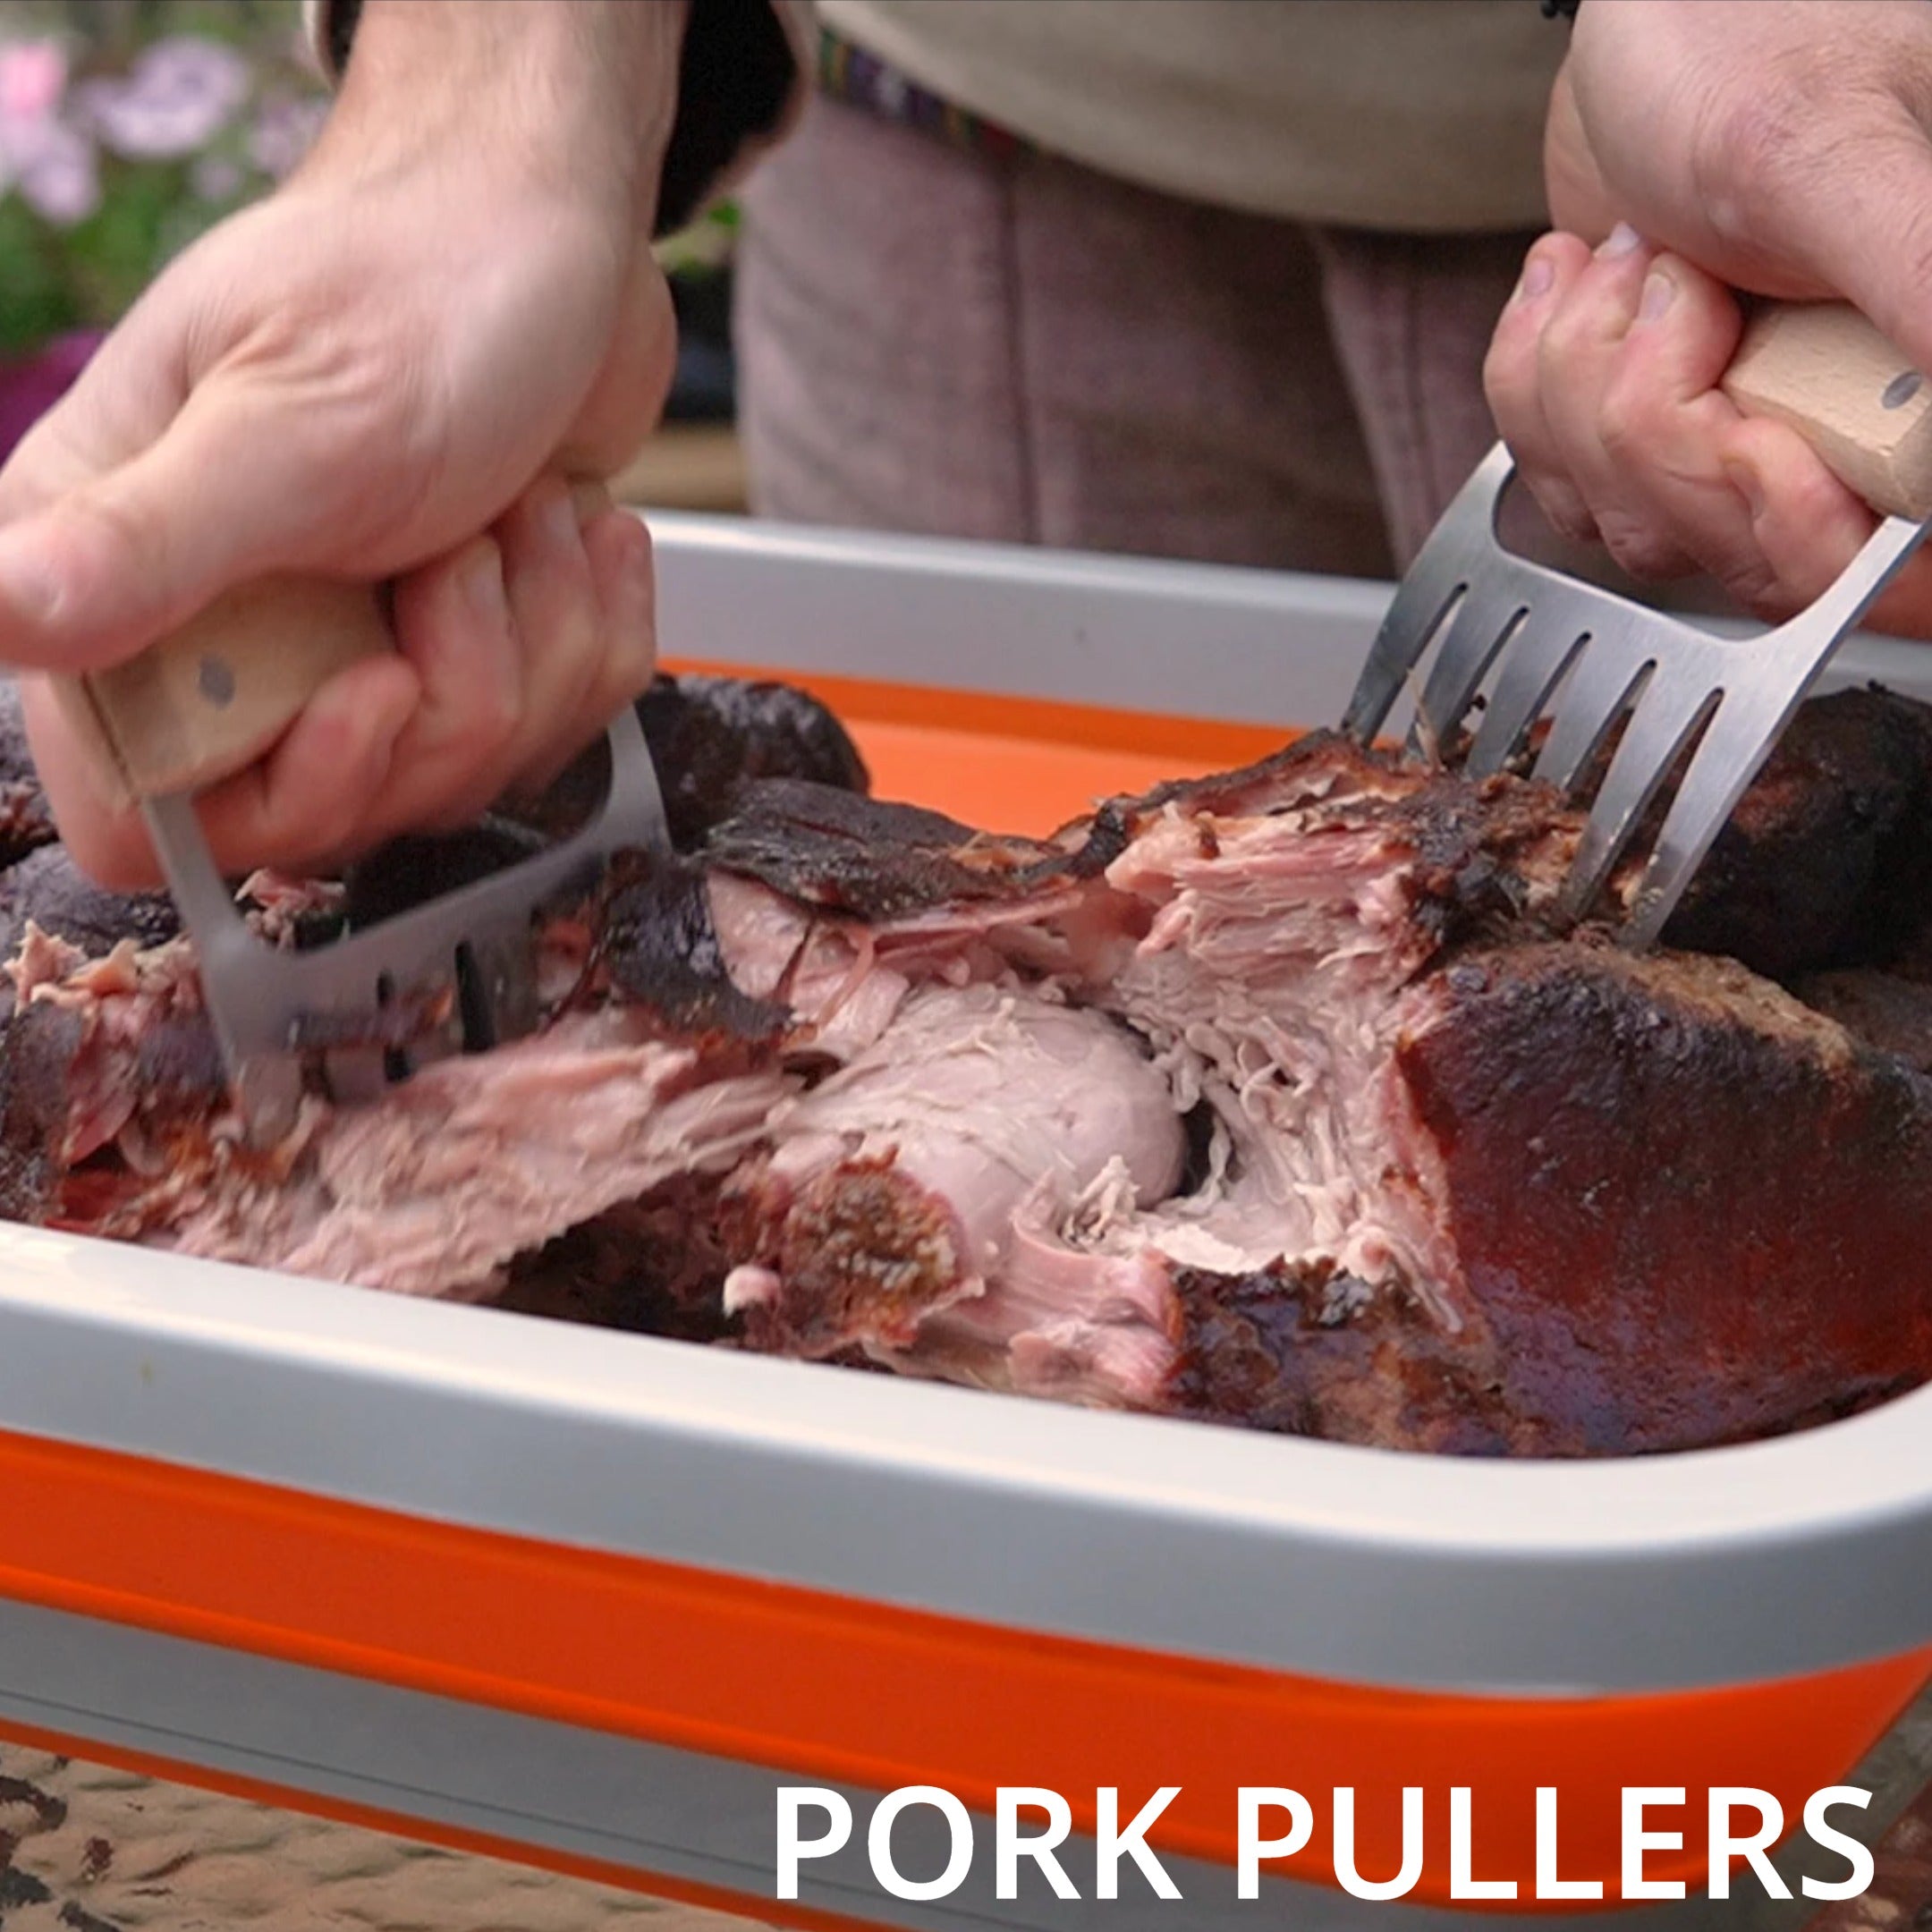 Pork Pullers